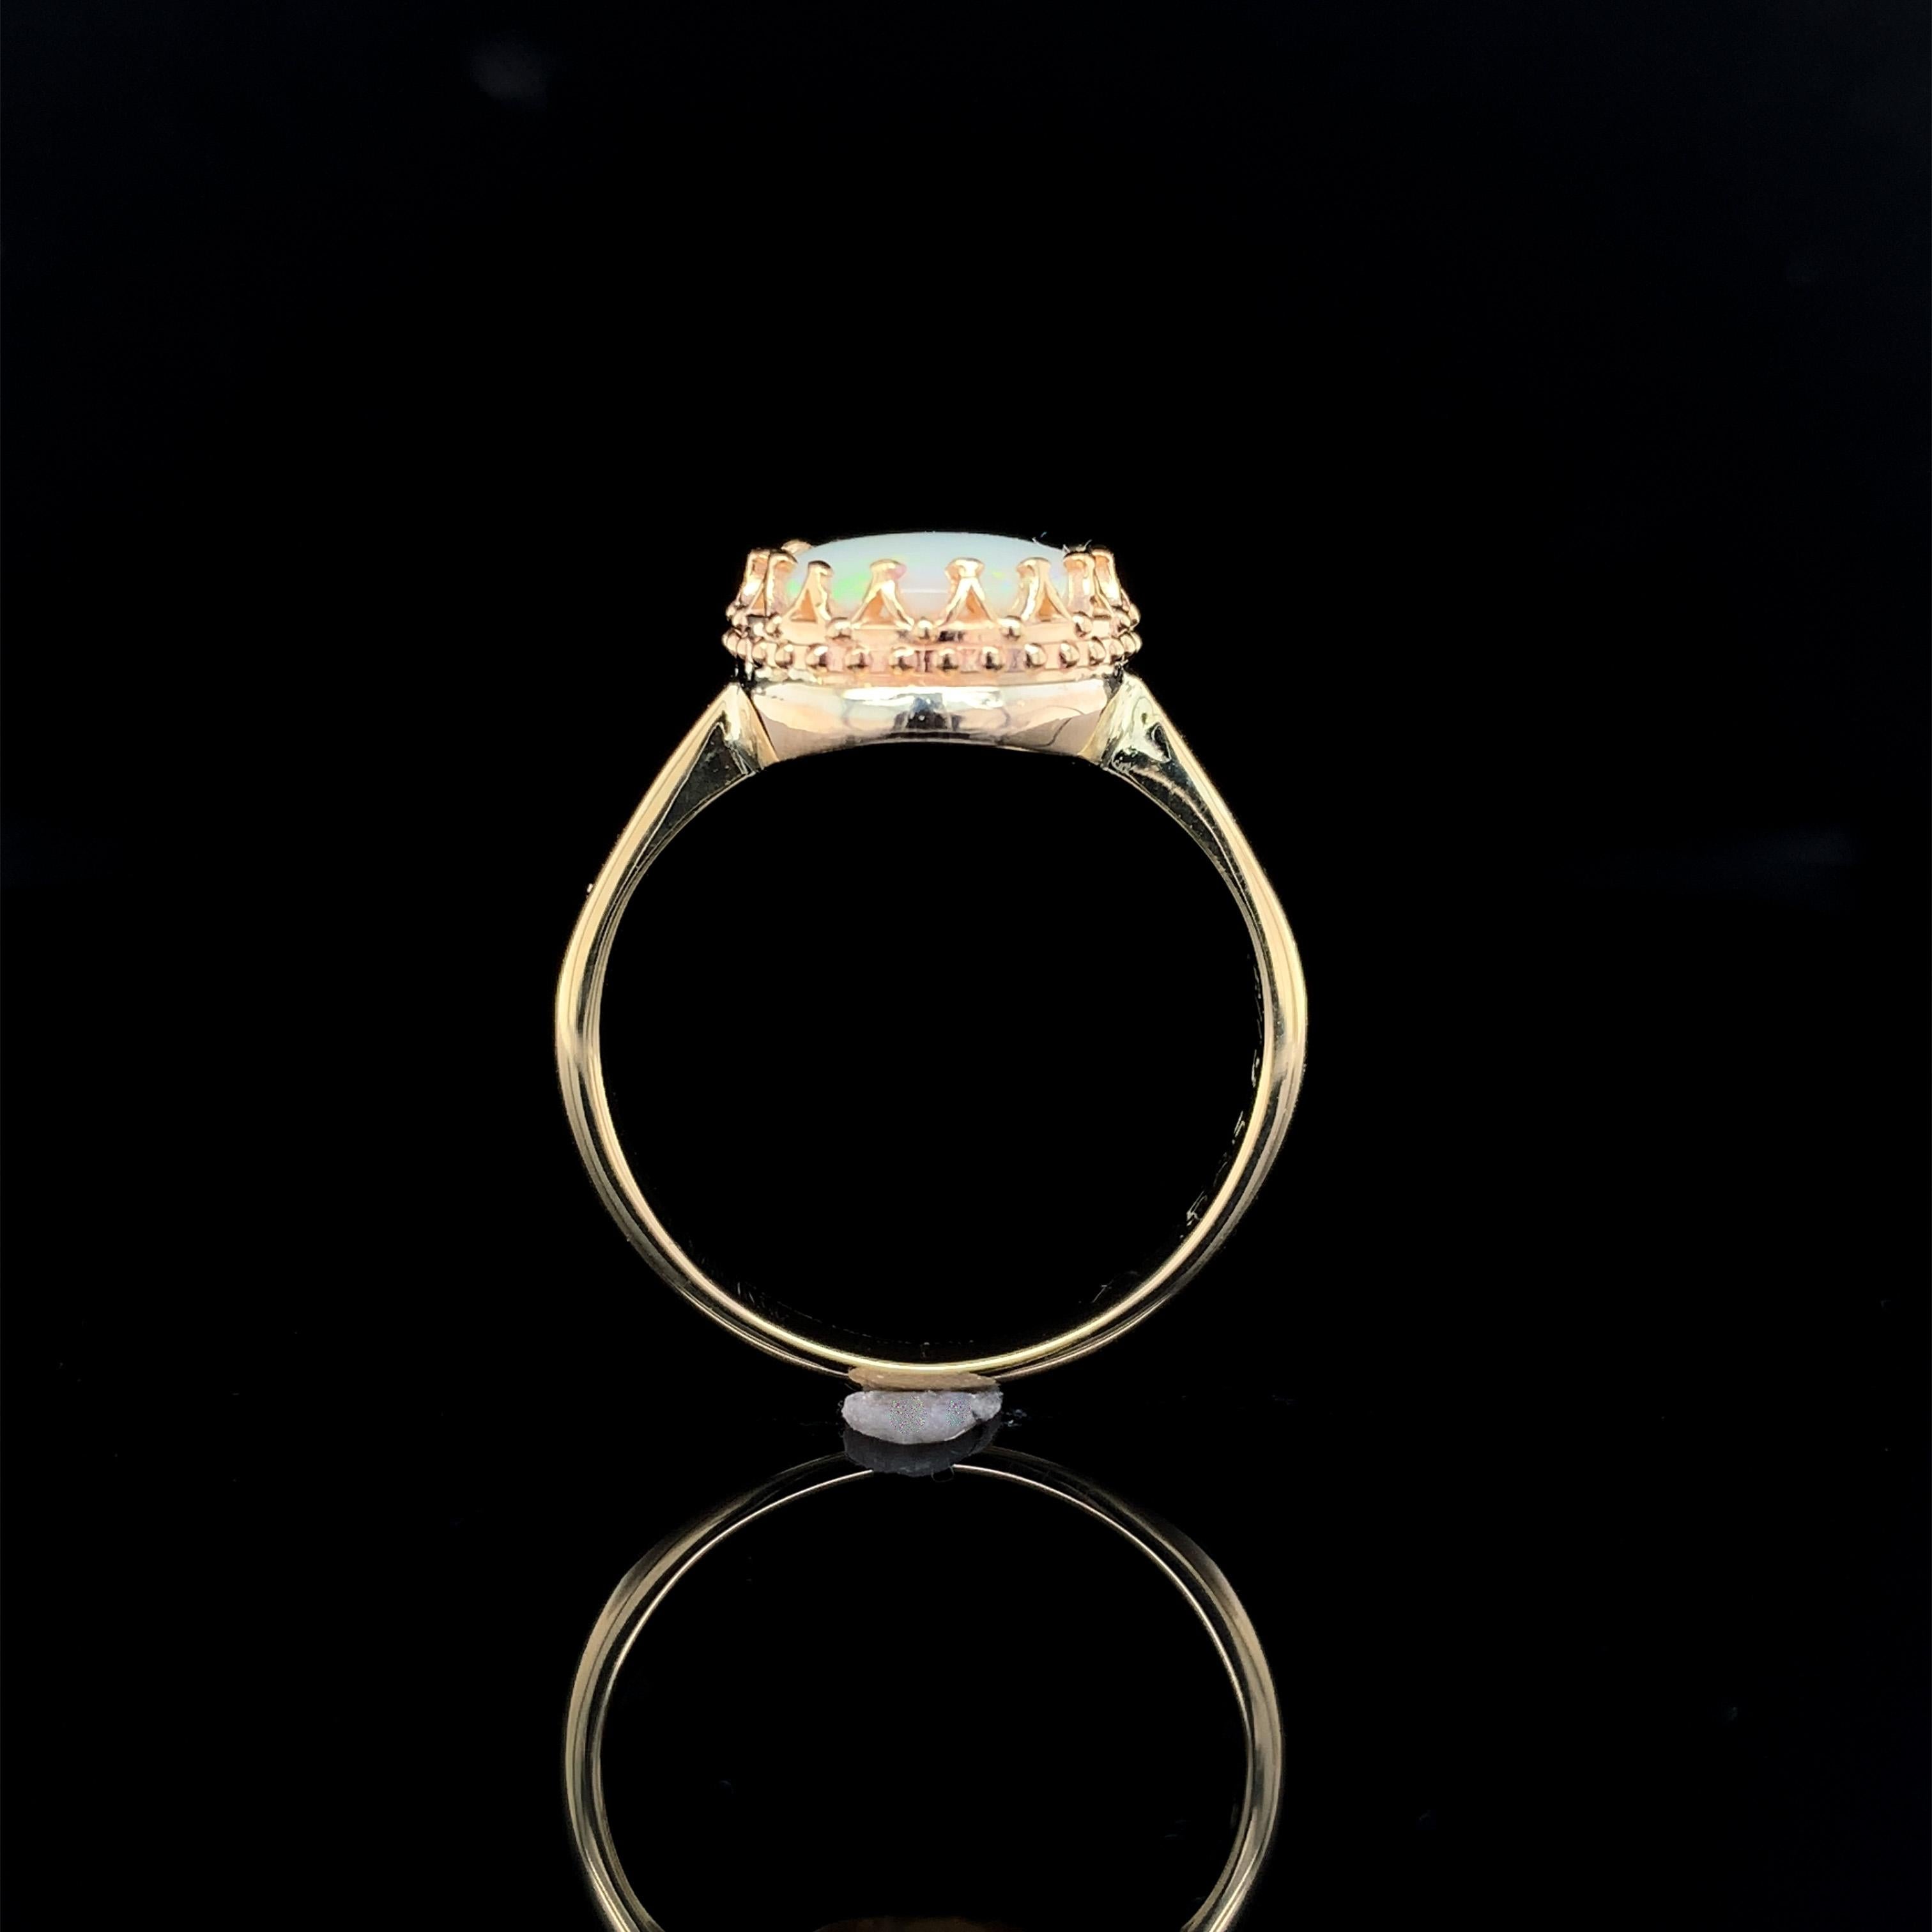 Vintage 14K Gelbgold 1,80 Karat Opal Ring. Der echte natürliche australische Opal misst etwa 11 mm x 8,5 mm. Der Opal ist lichtdurchlässig und hat vor allem grüne Farbschattierungen. Der Ring hat Spuren einer kleinen Handgravur an den Seiten, die